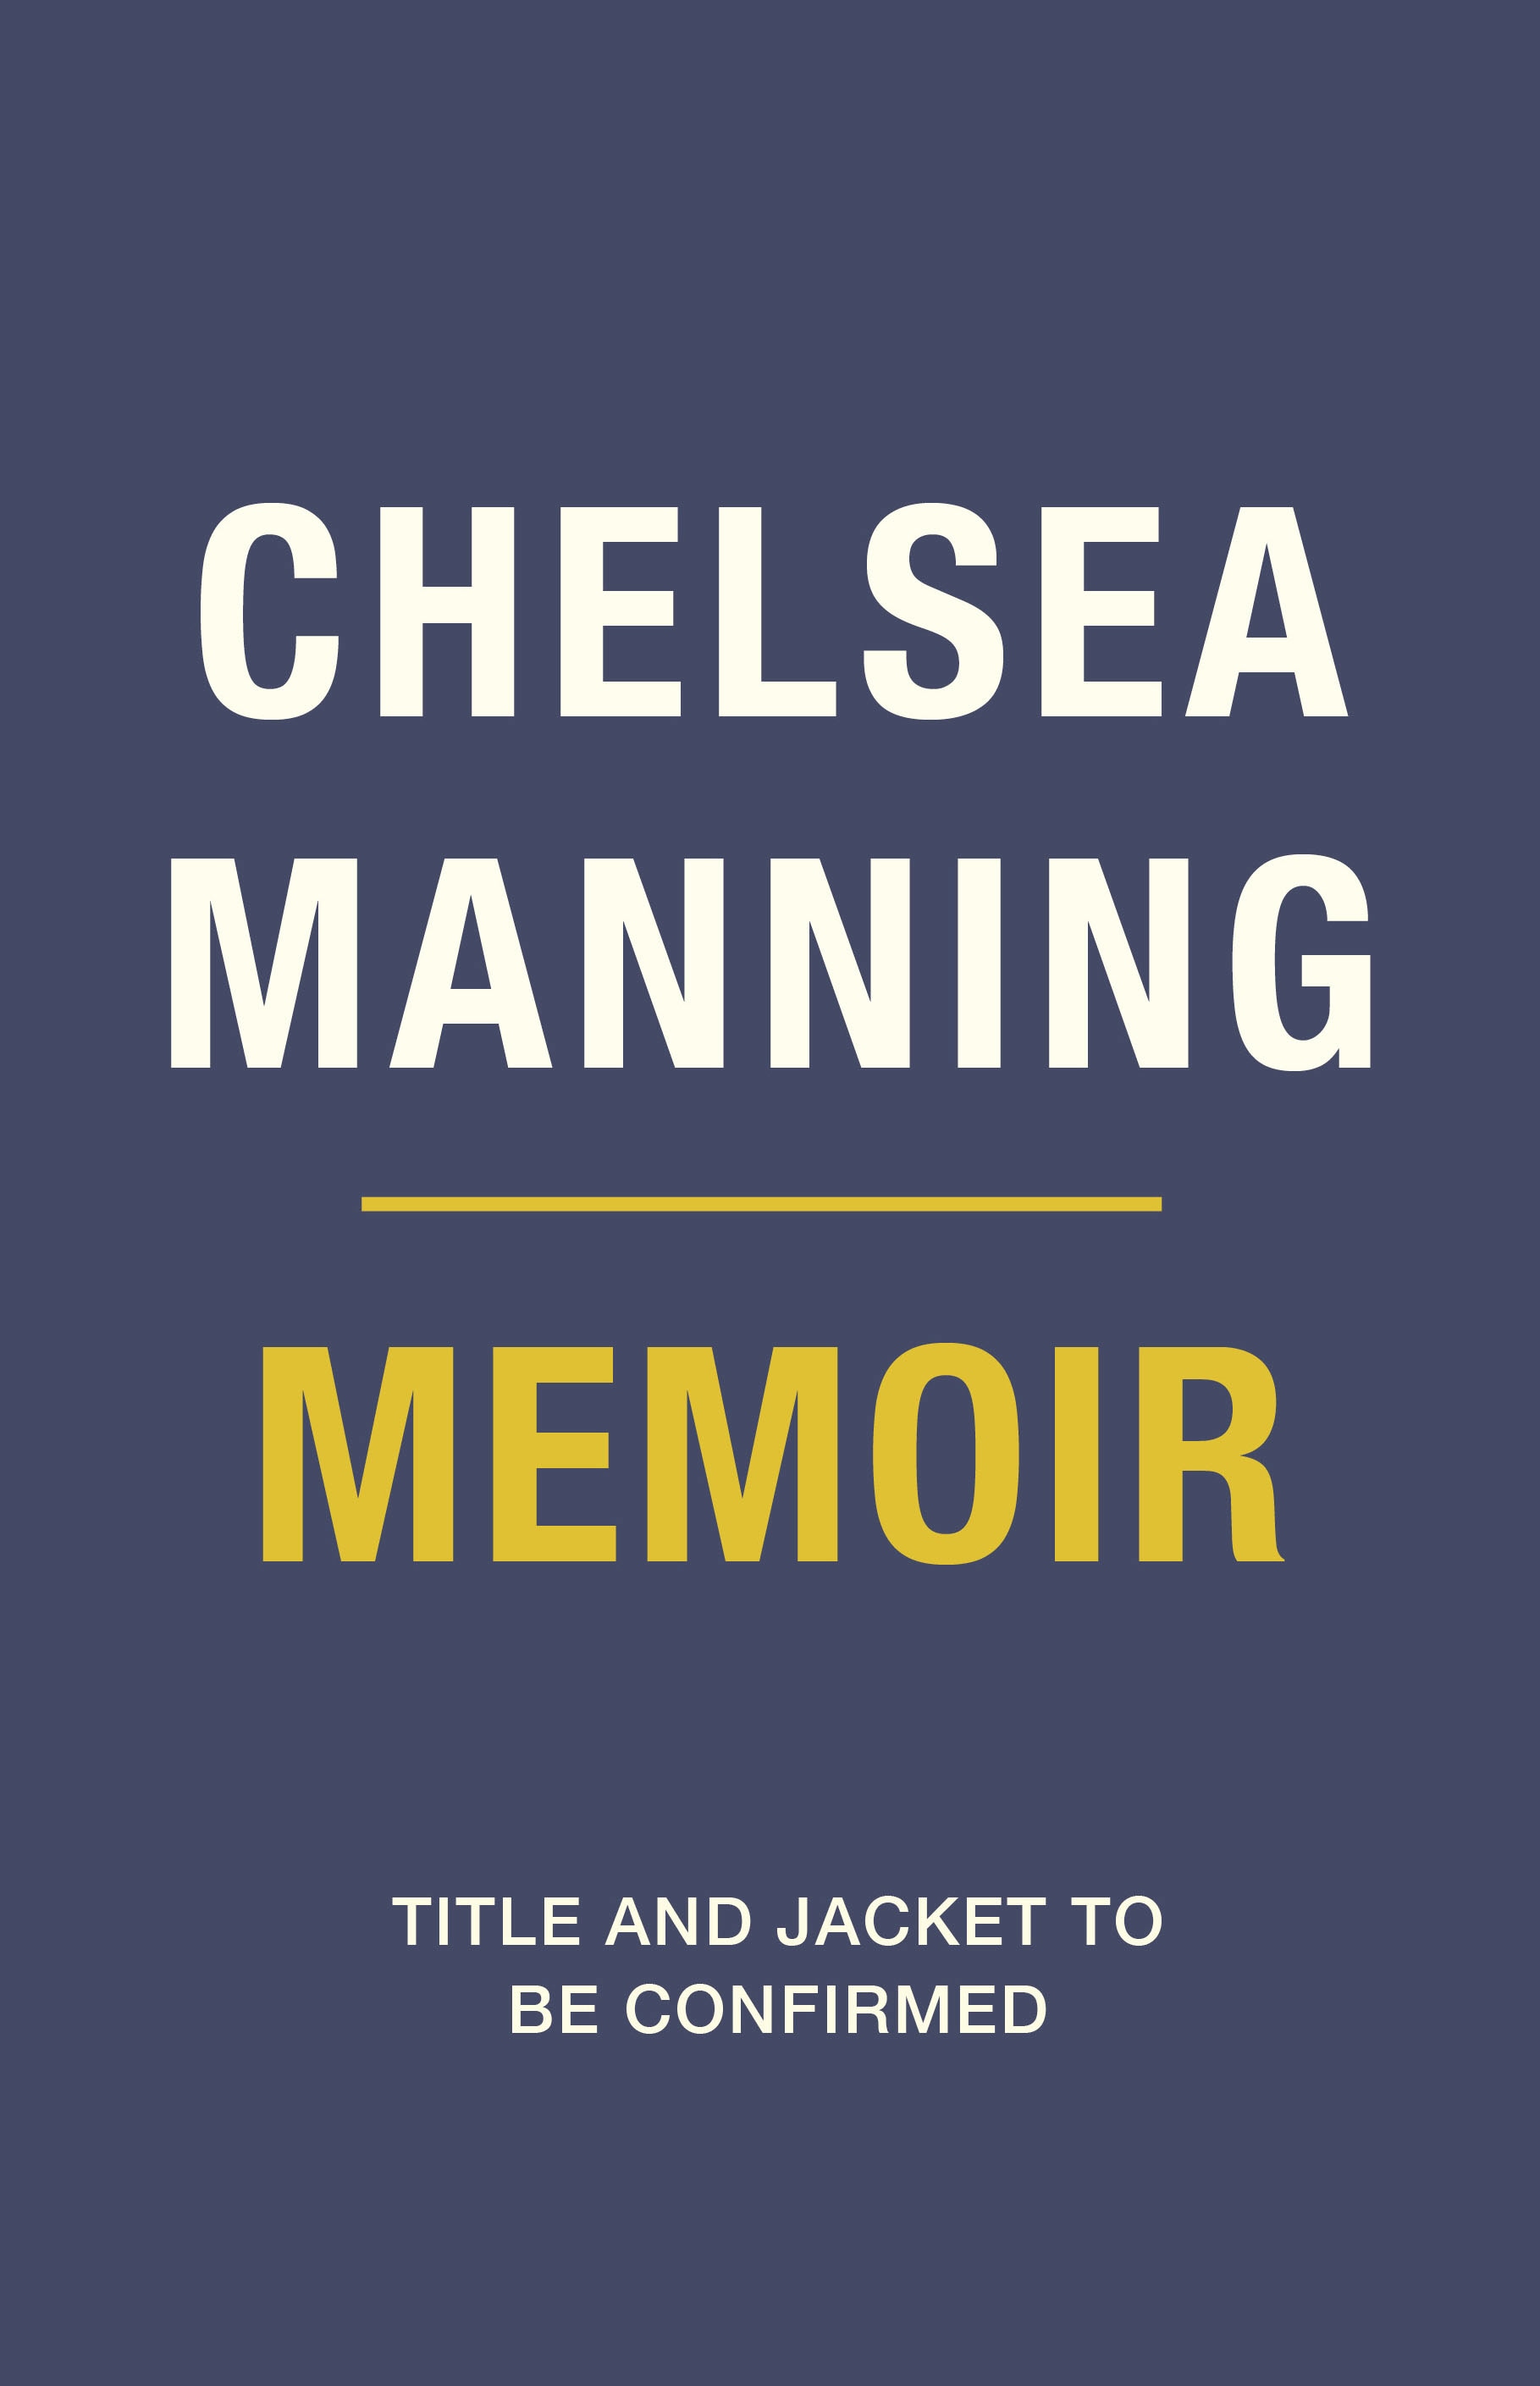 Book “Chelsea Manning Memoir” by Chelsea Manning — September 1, 2022